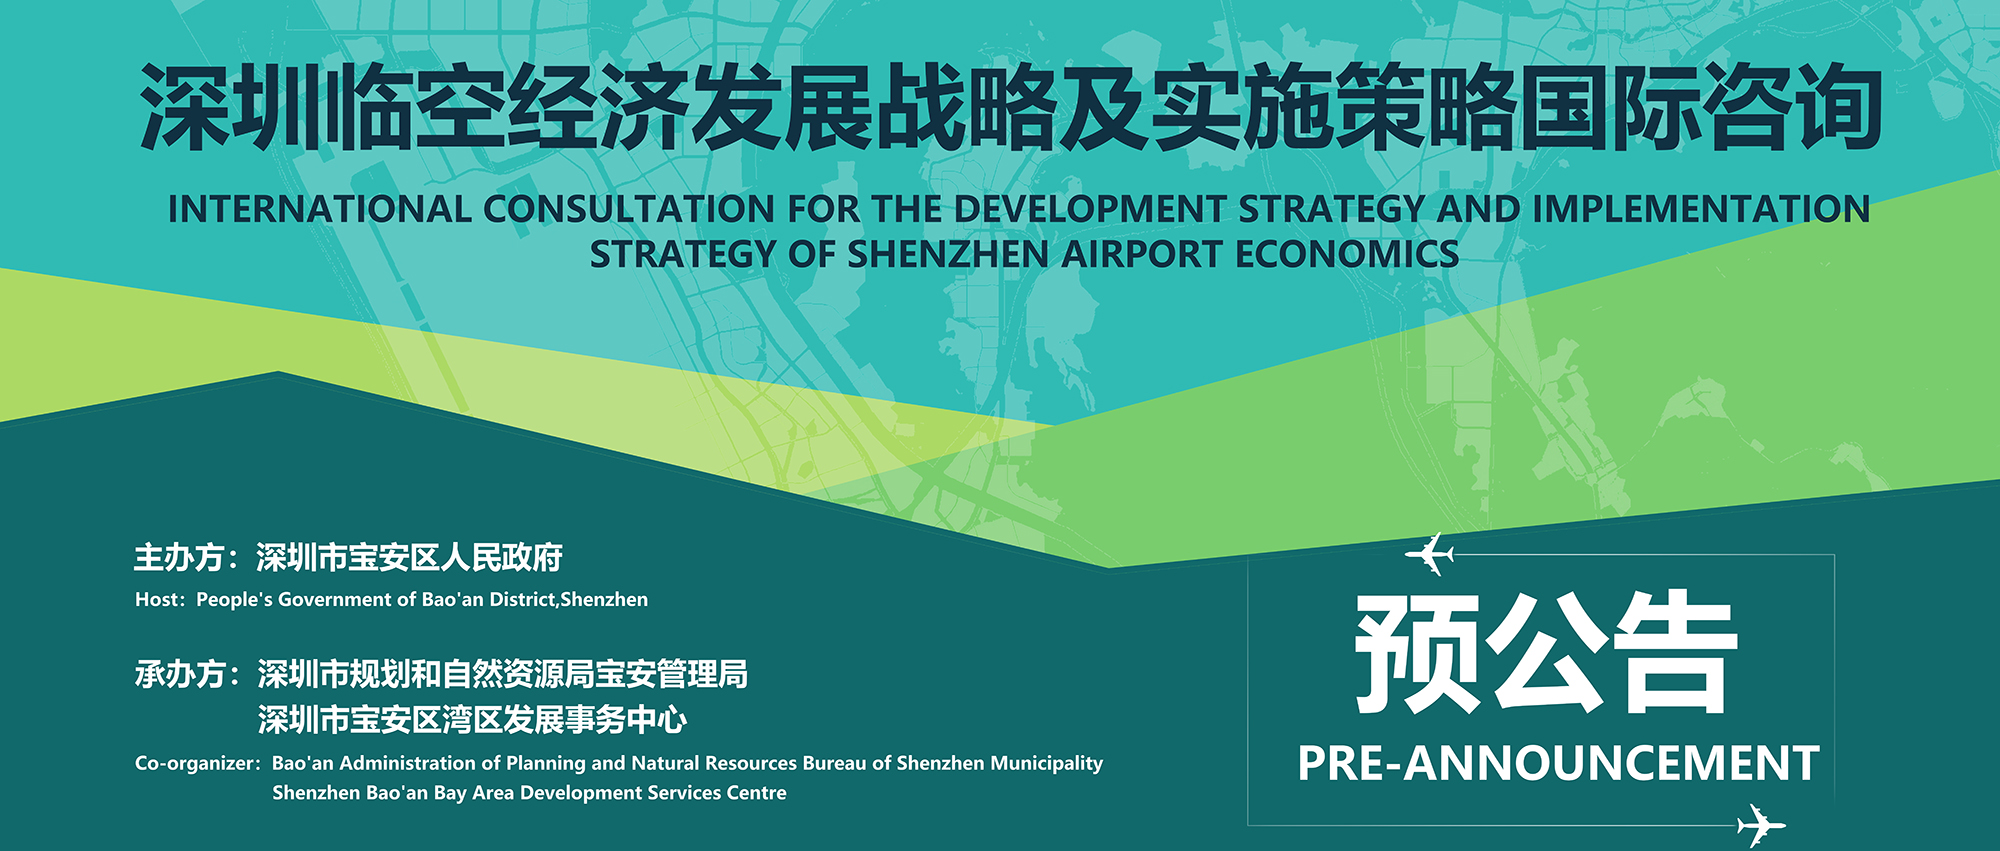  预公告 | 深圳临空经济发展战略及实施策略国际咨询 